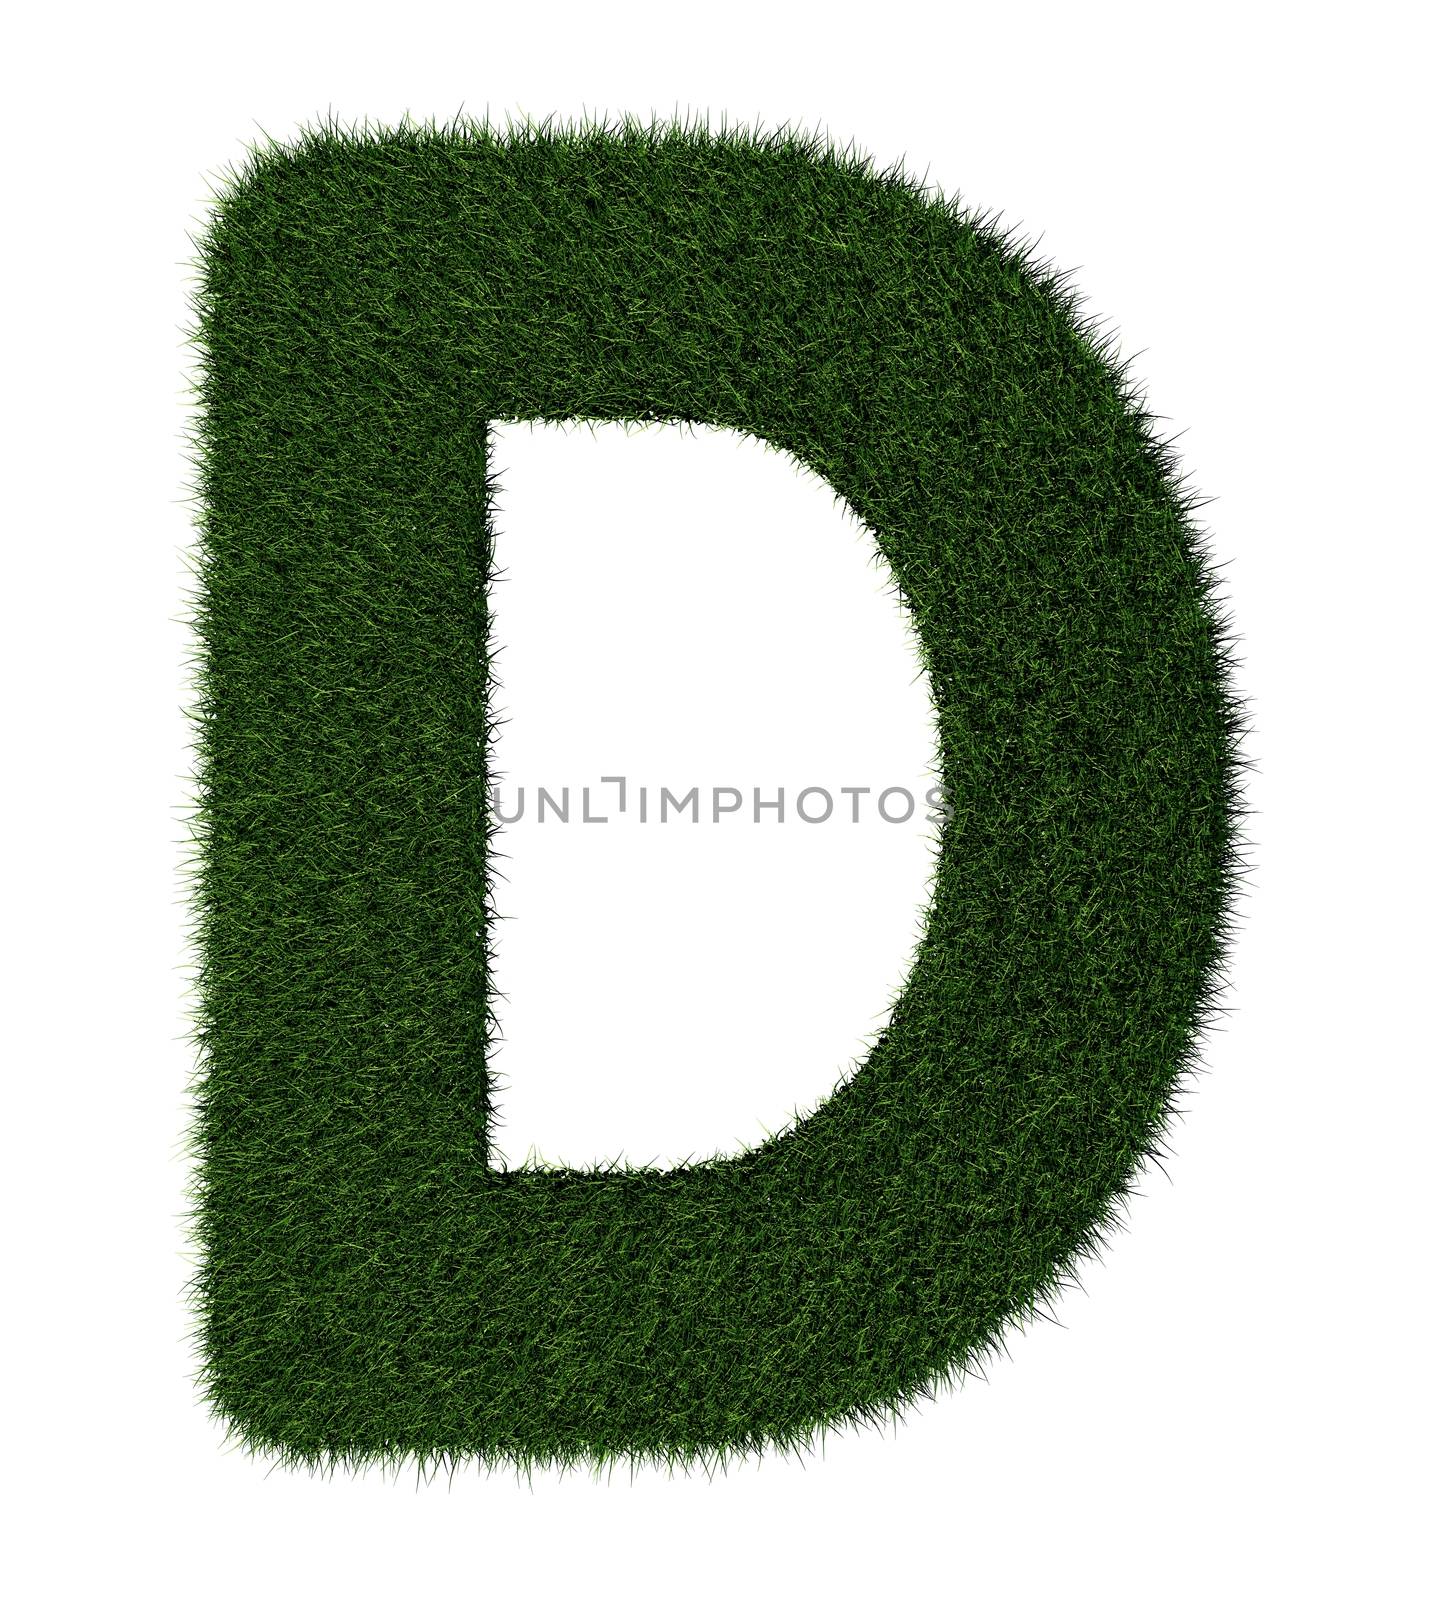 Grass alphabet - D by midani